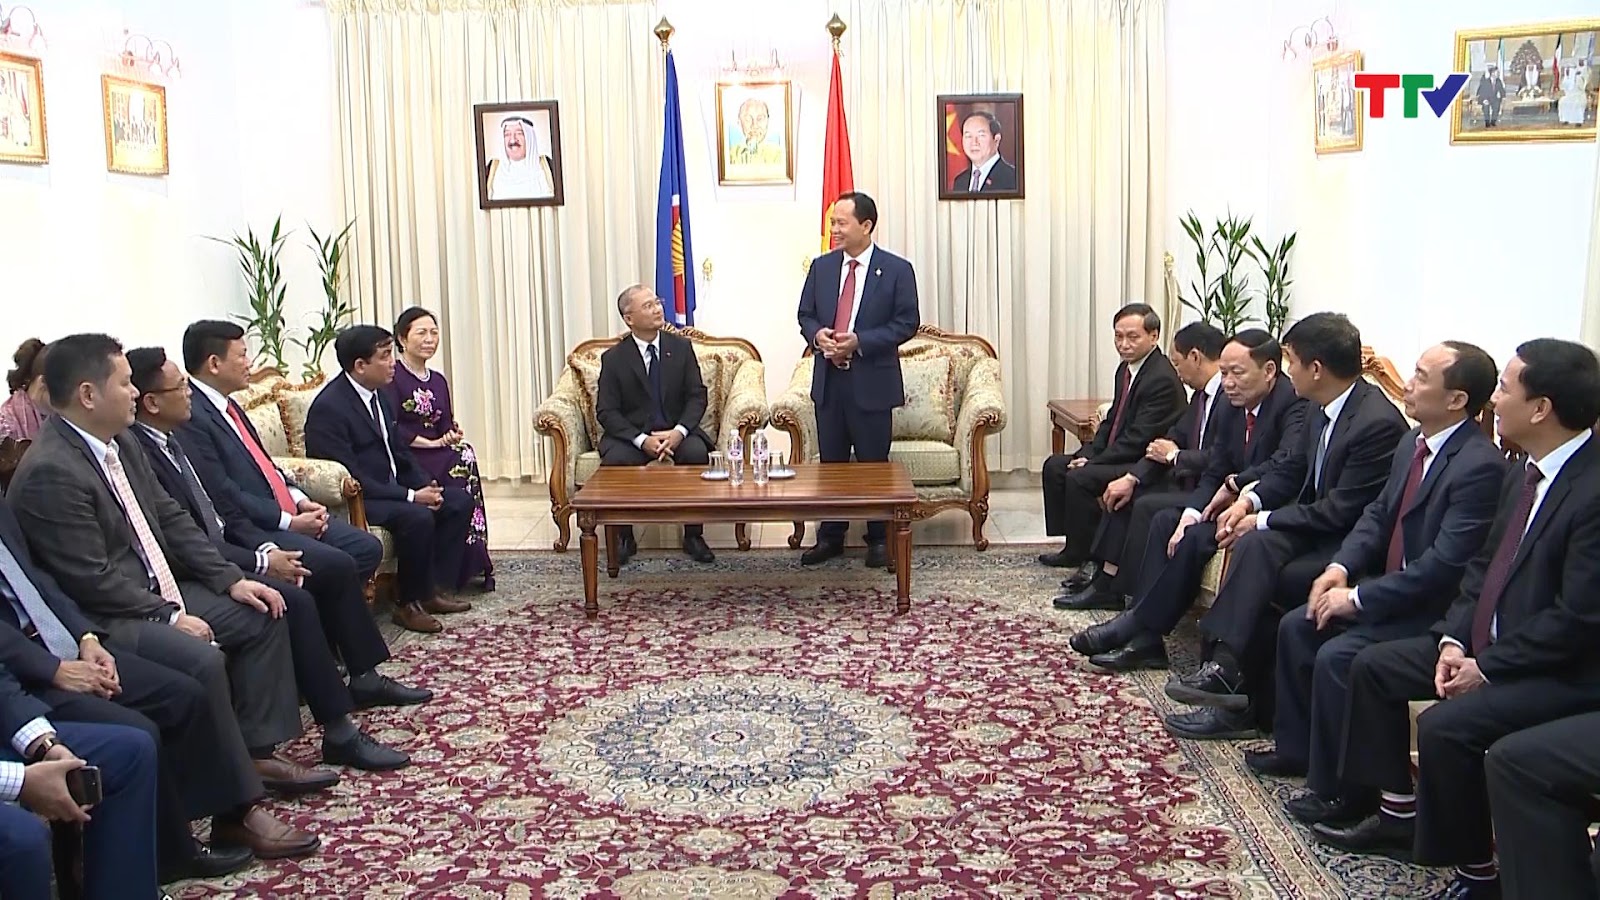 Đồng chí Bí thư Tỉnh uỷ và đoàn cán bộ cấp cao của Thanh Hoá đã đến thăm và làm việc với đại sứ quán Việt Nam tại Nhà nước Cô Oét,